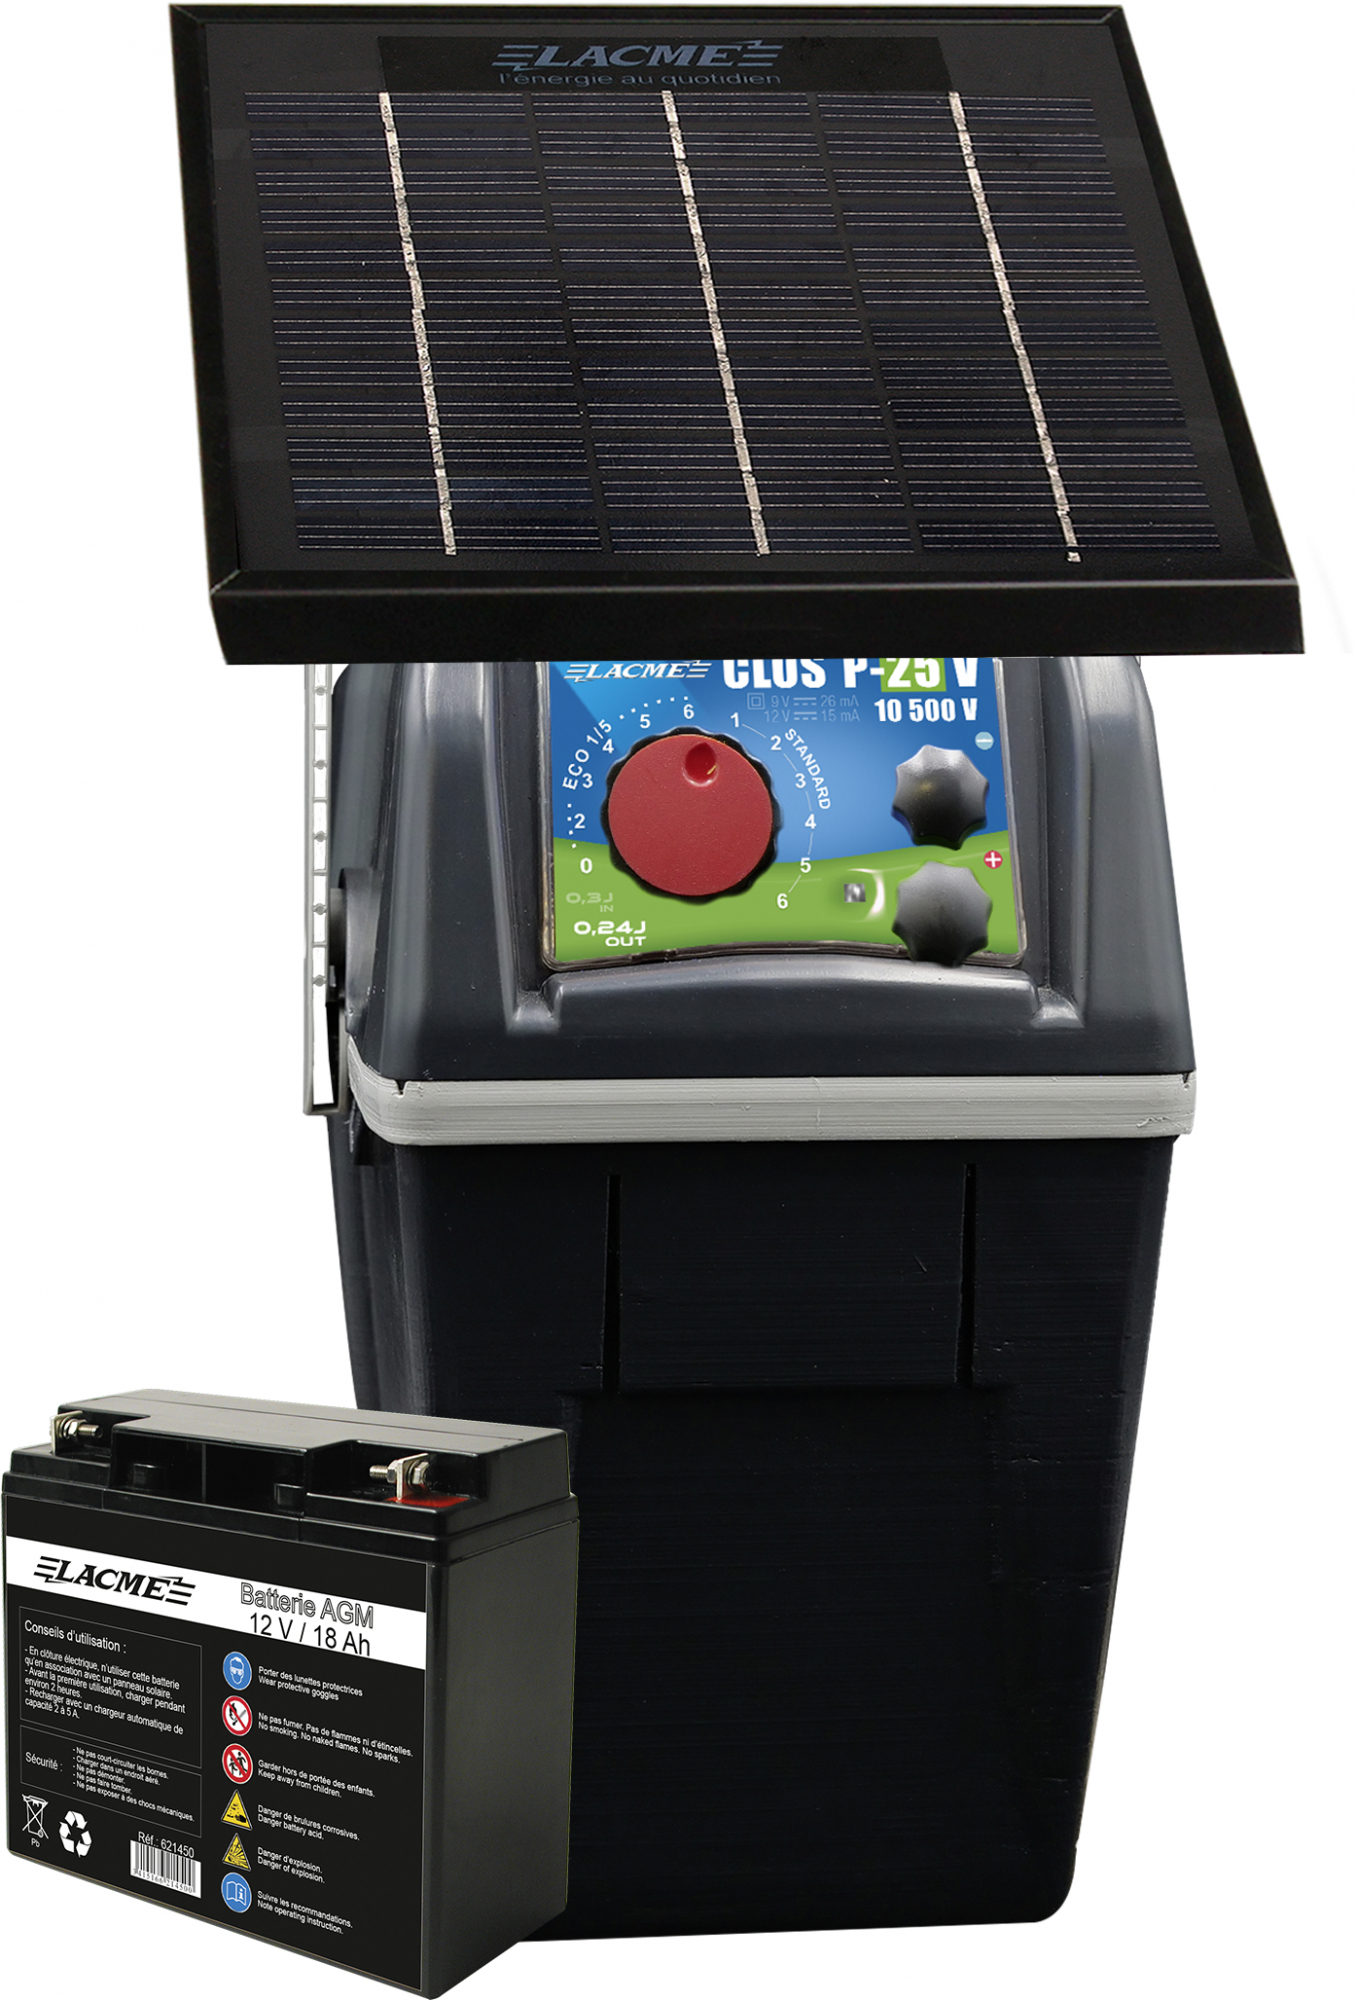 CLOS P25 Elektrozaungerät mit Solarpanel und Batterie, 12 Volt 240 mJ Leistung